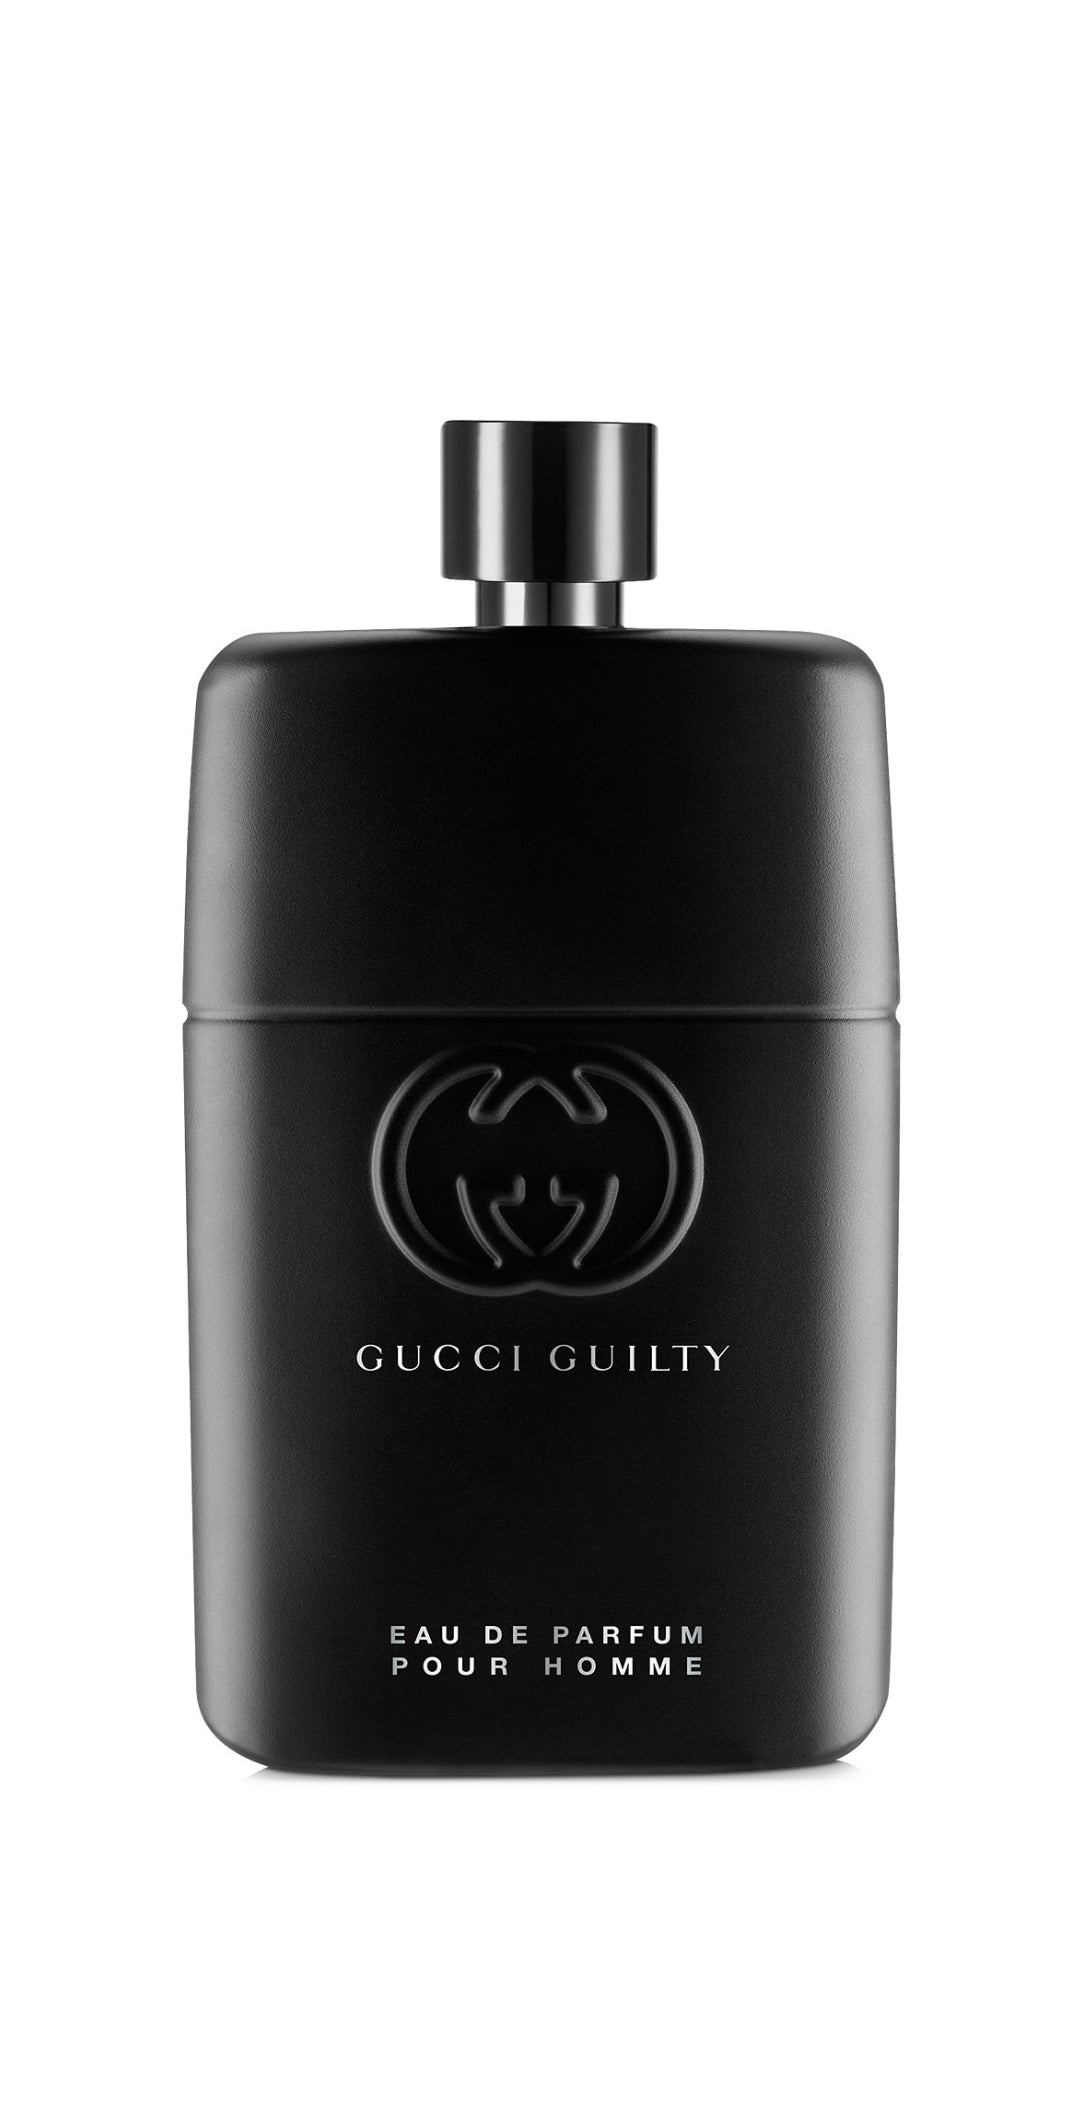 Mens  Gucci Guilty  Pour Homme Eau de Parfum Fragrance - 5.0oz